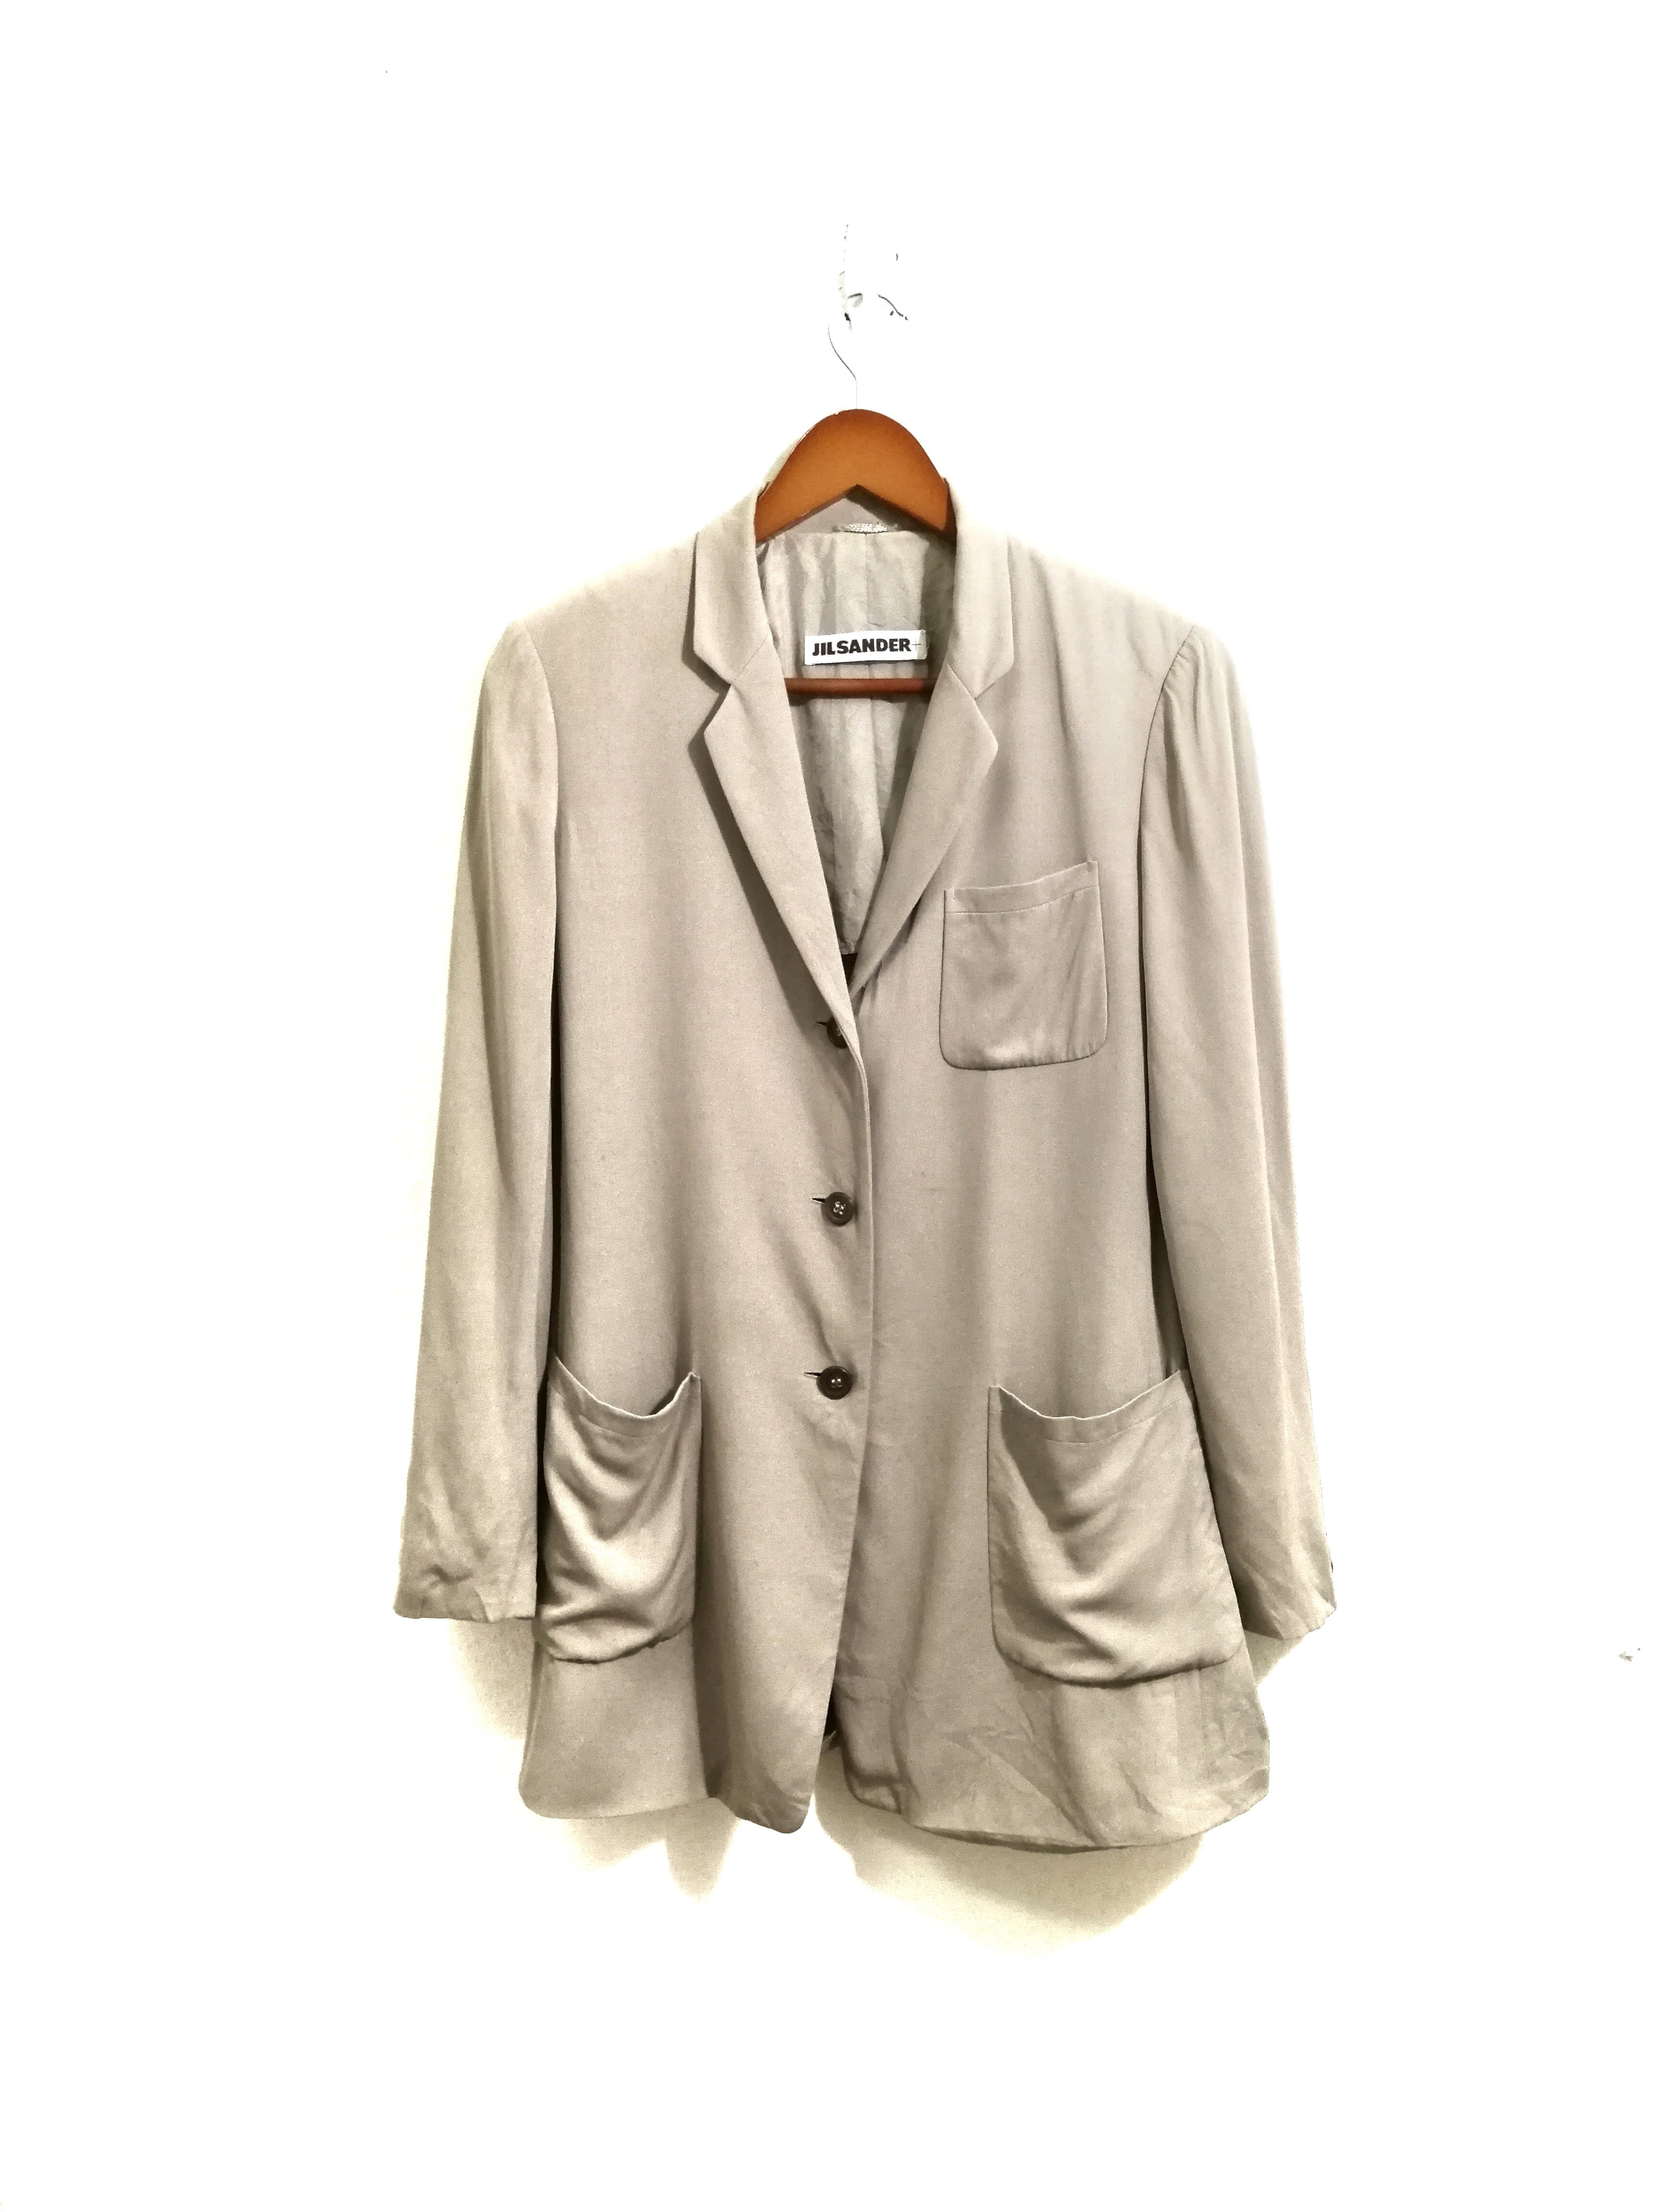 Jil Sander Jacket Coat Gray Color 10 - 1